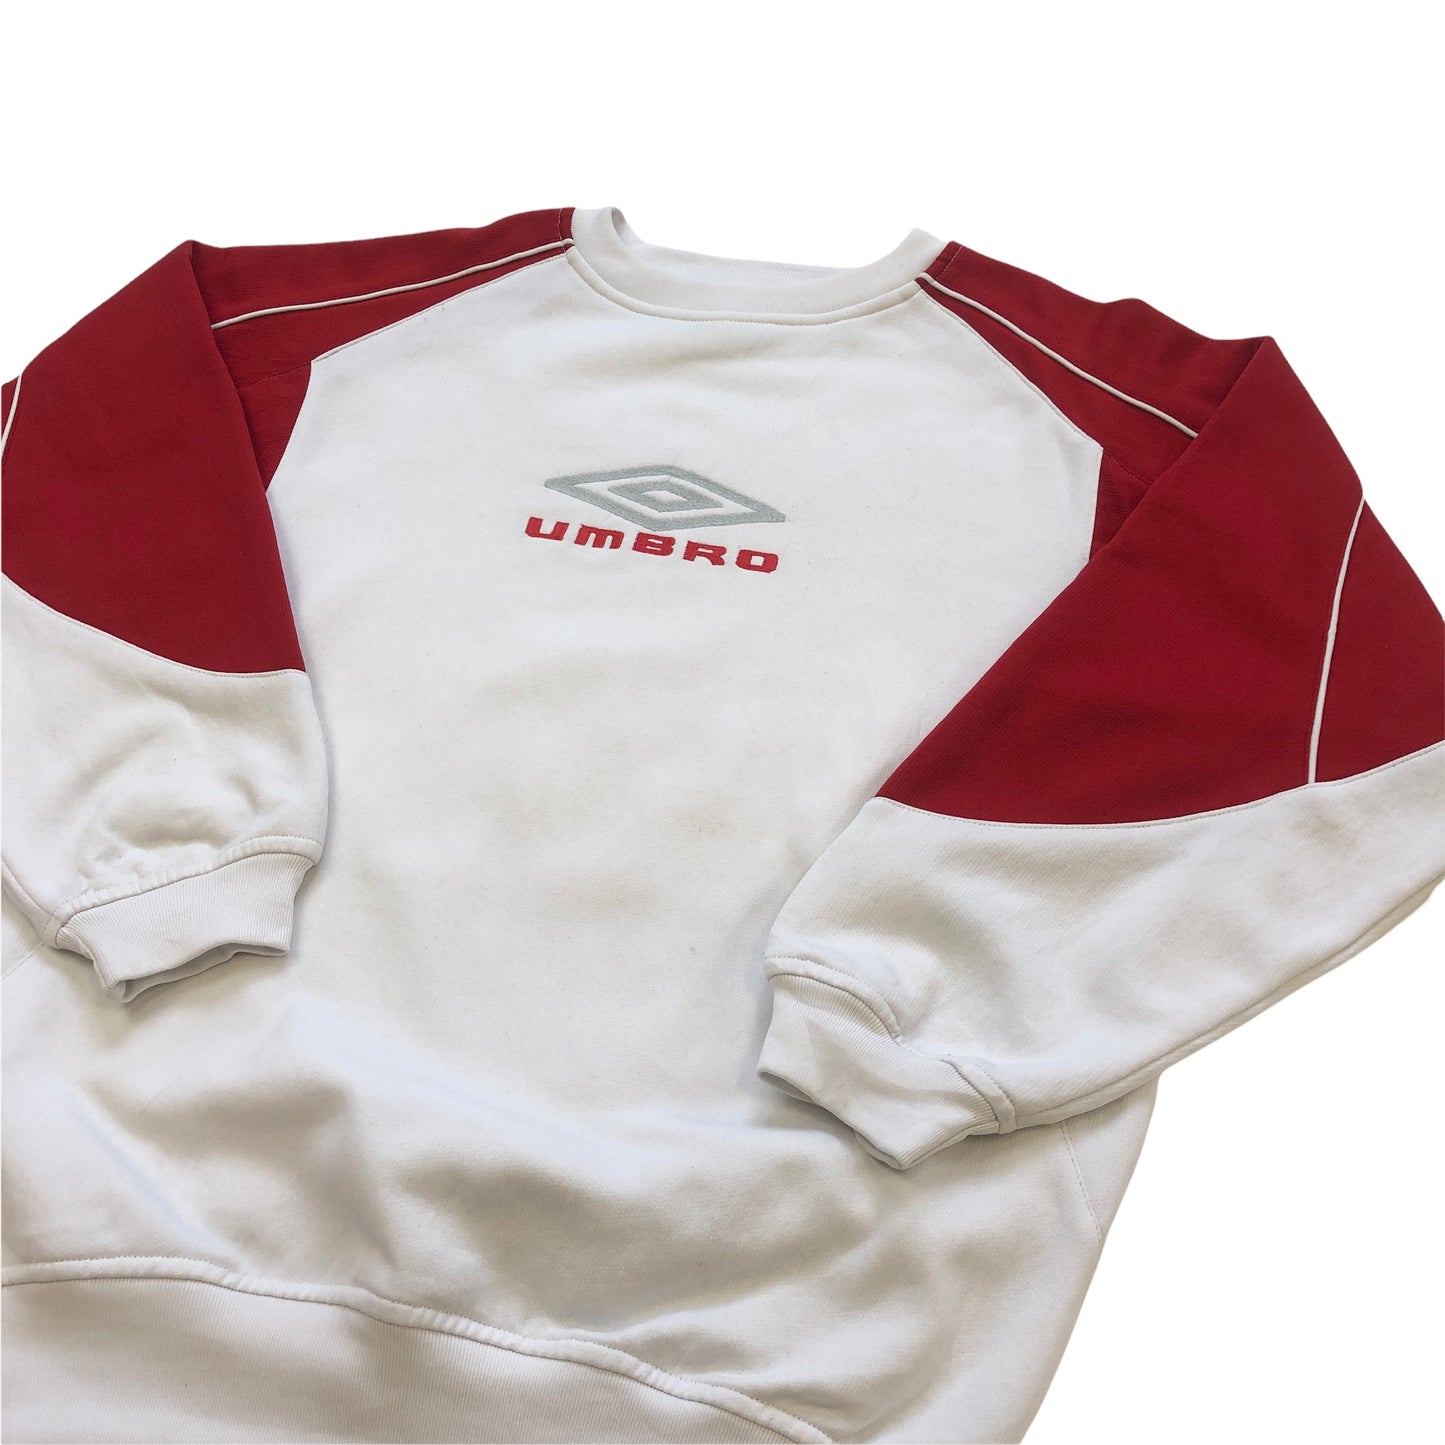 Vintage Umbro Sweatshirt (14-16yrs)